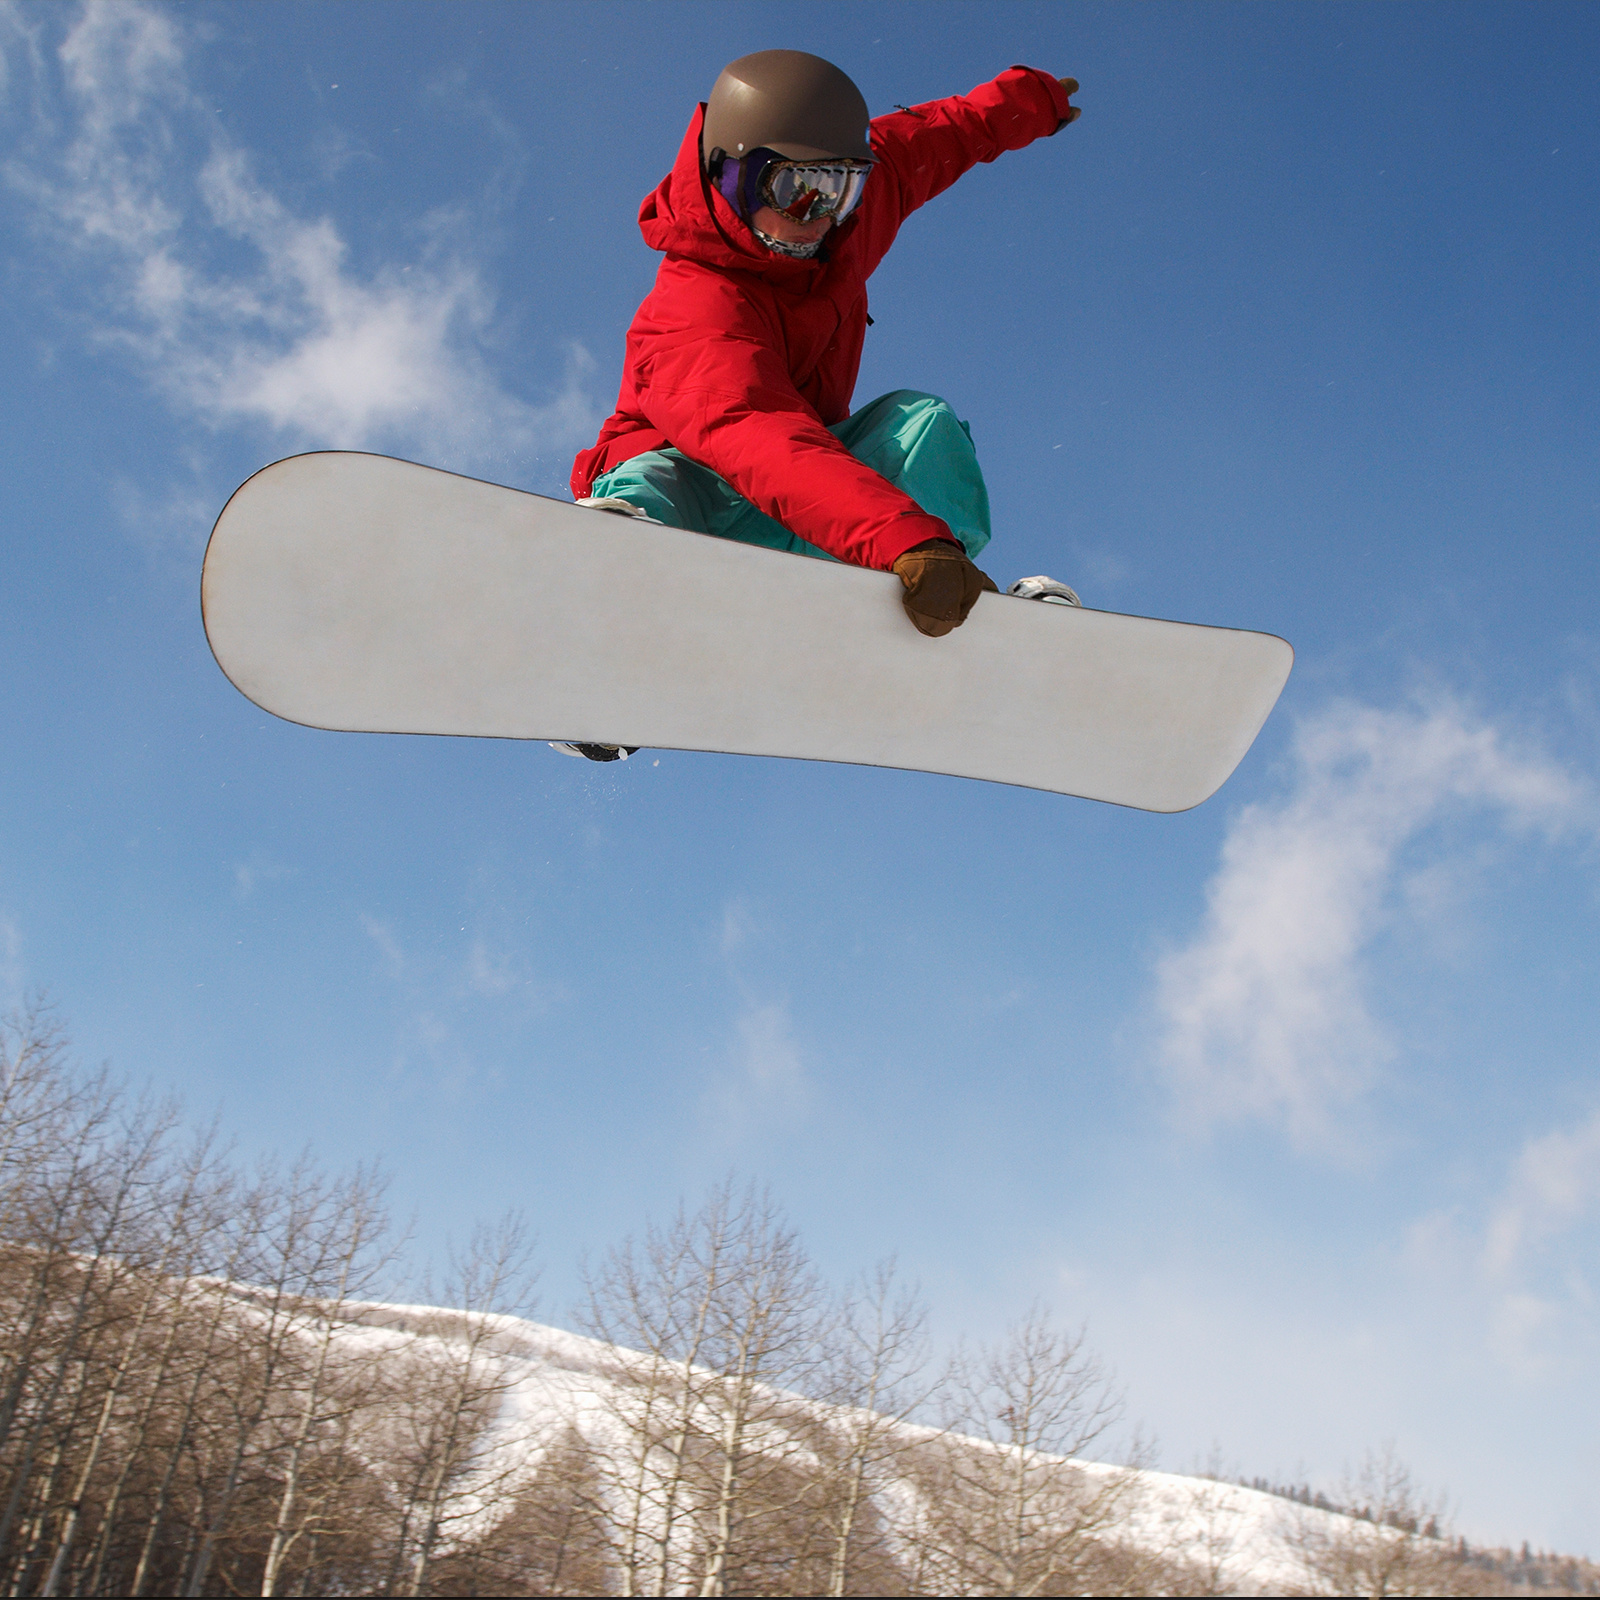 Ski board